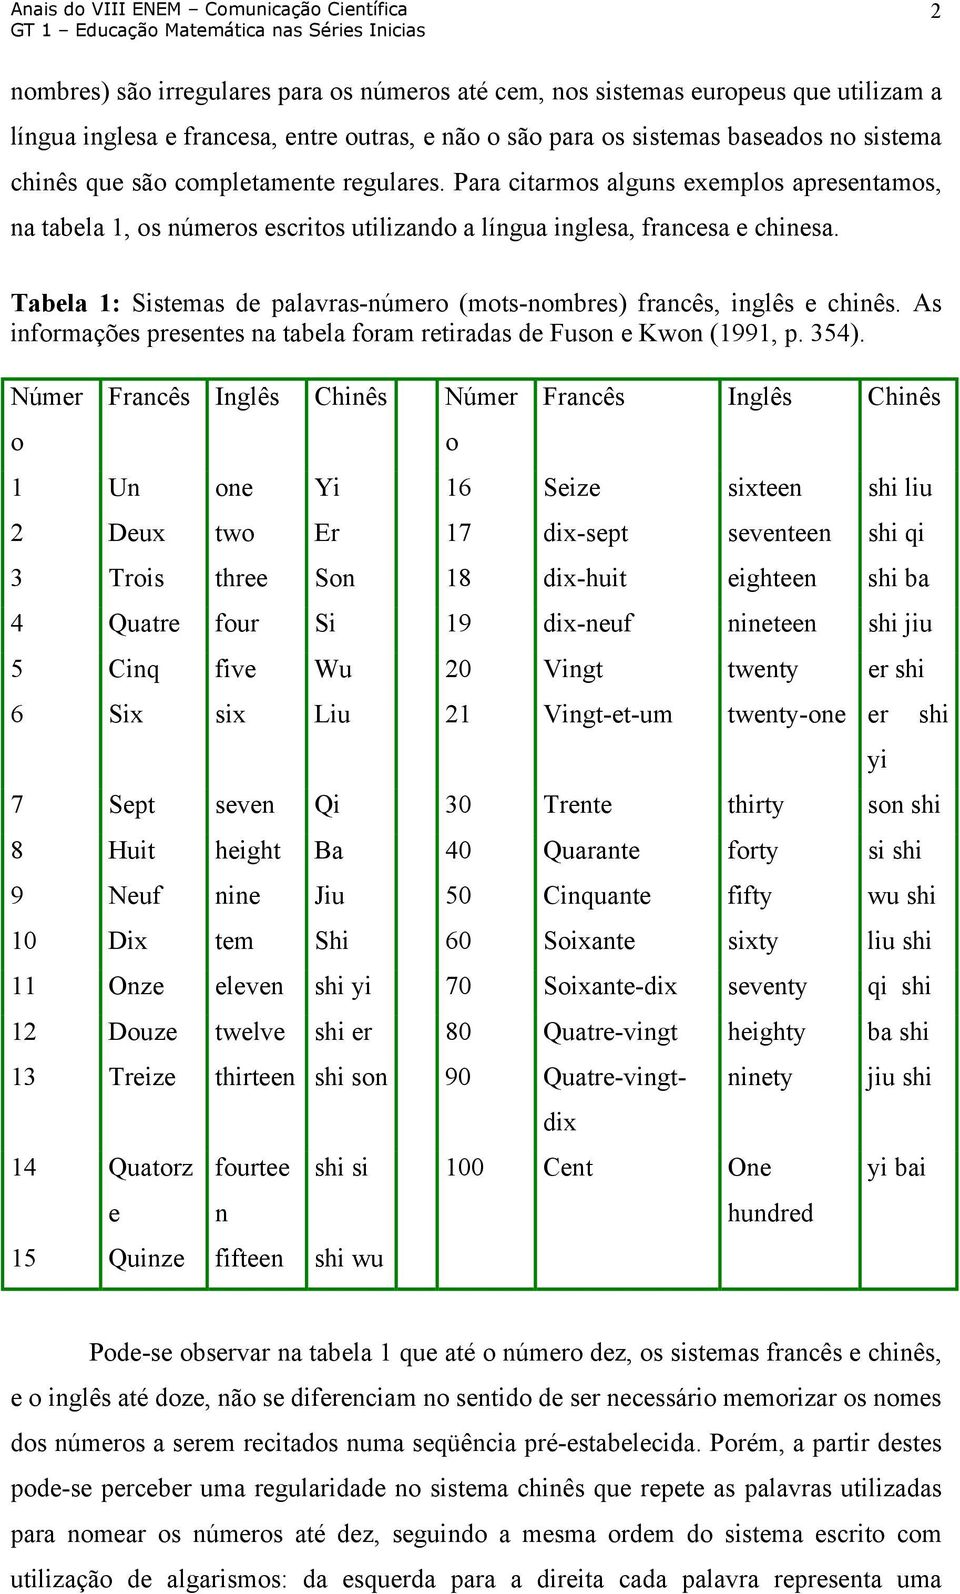 Tabela 1: Sistemas de palavras-número (mots-nombres) francês, inglês e chinês. As informações presentes na tabela foram retiradas de Fuson e Kwon (1991, p. 354).